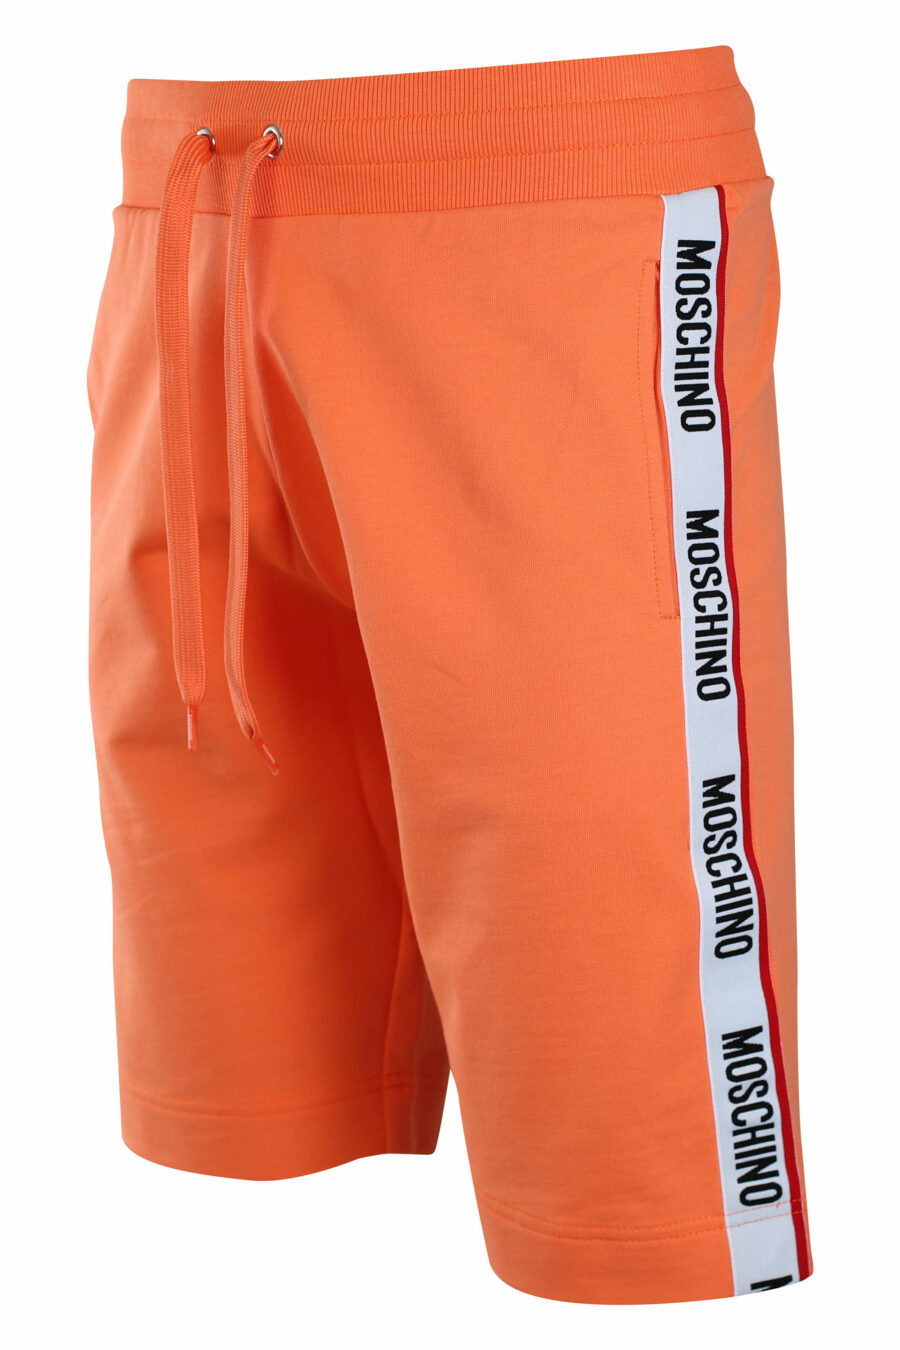 Bas de survêtement orange avec logo sur les bandes latérales - IMG 2210